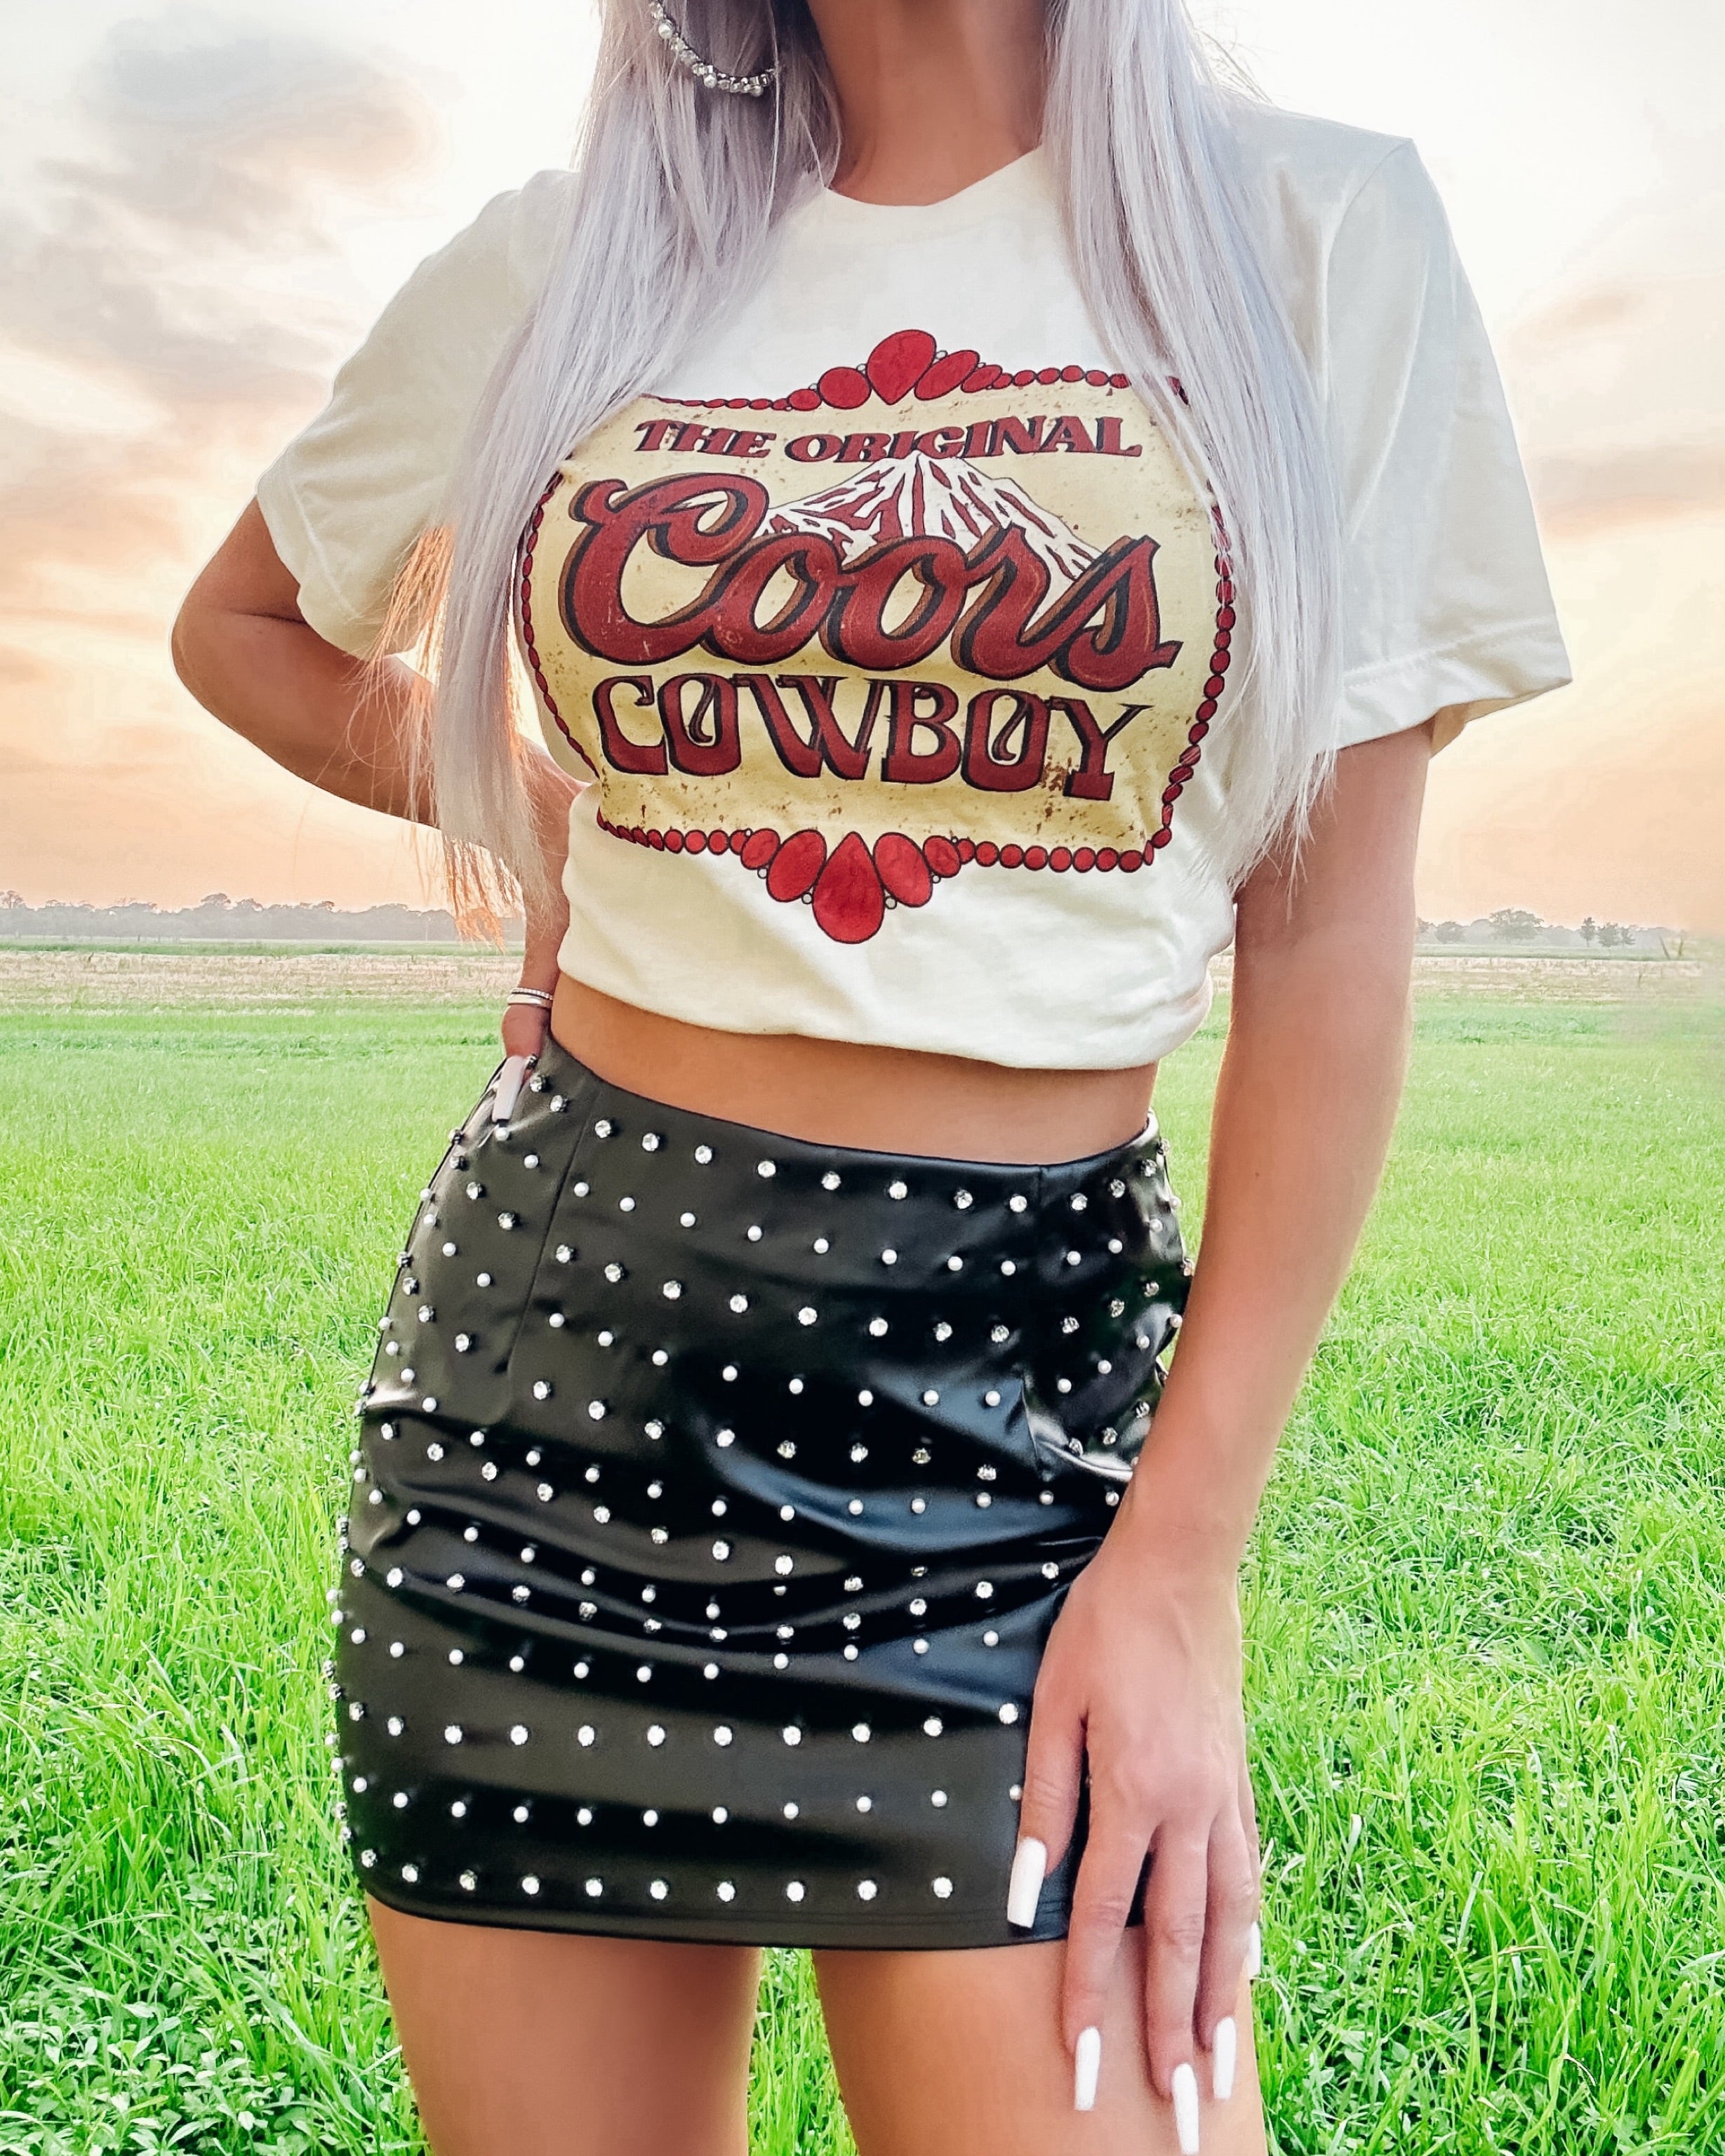 Coors Cowboy Tee - Natural